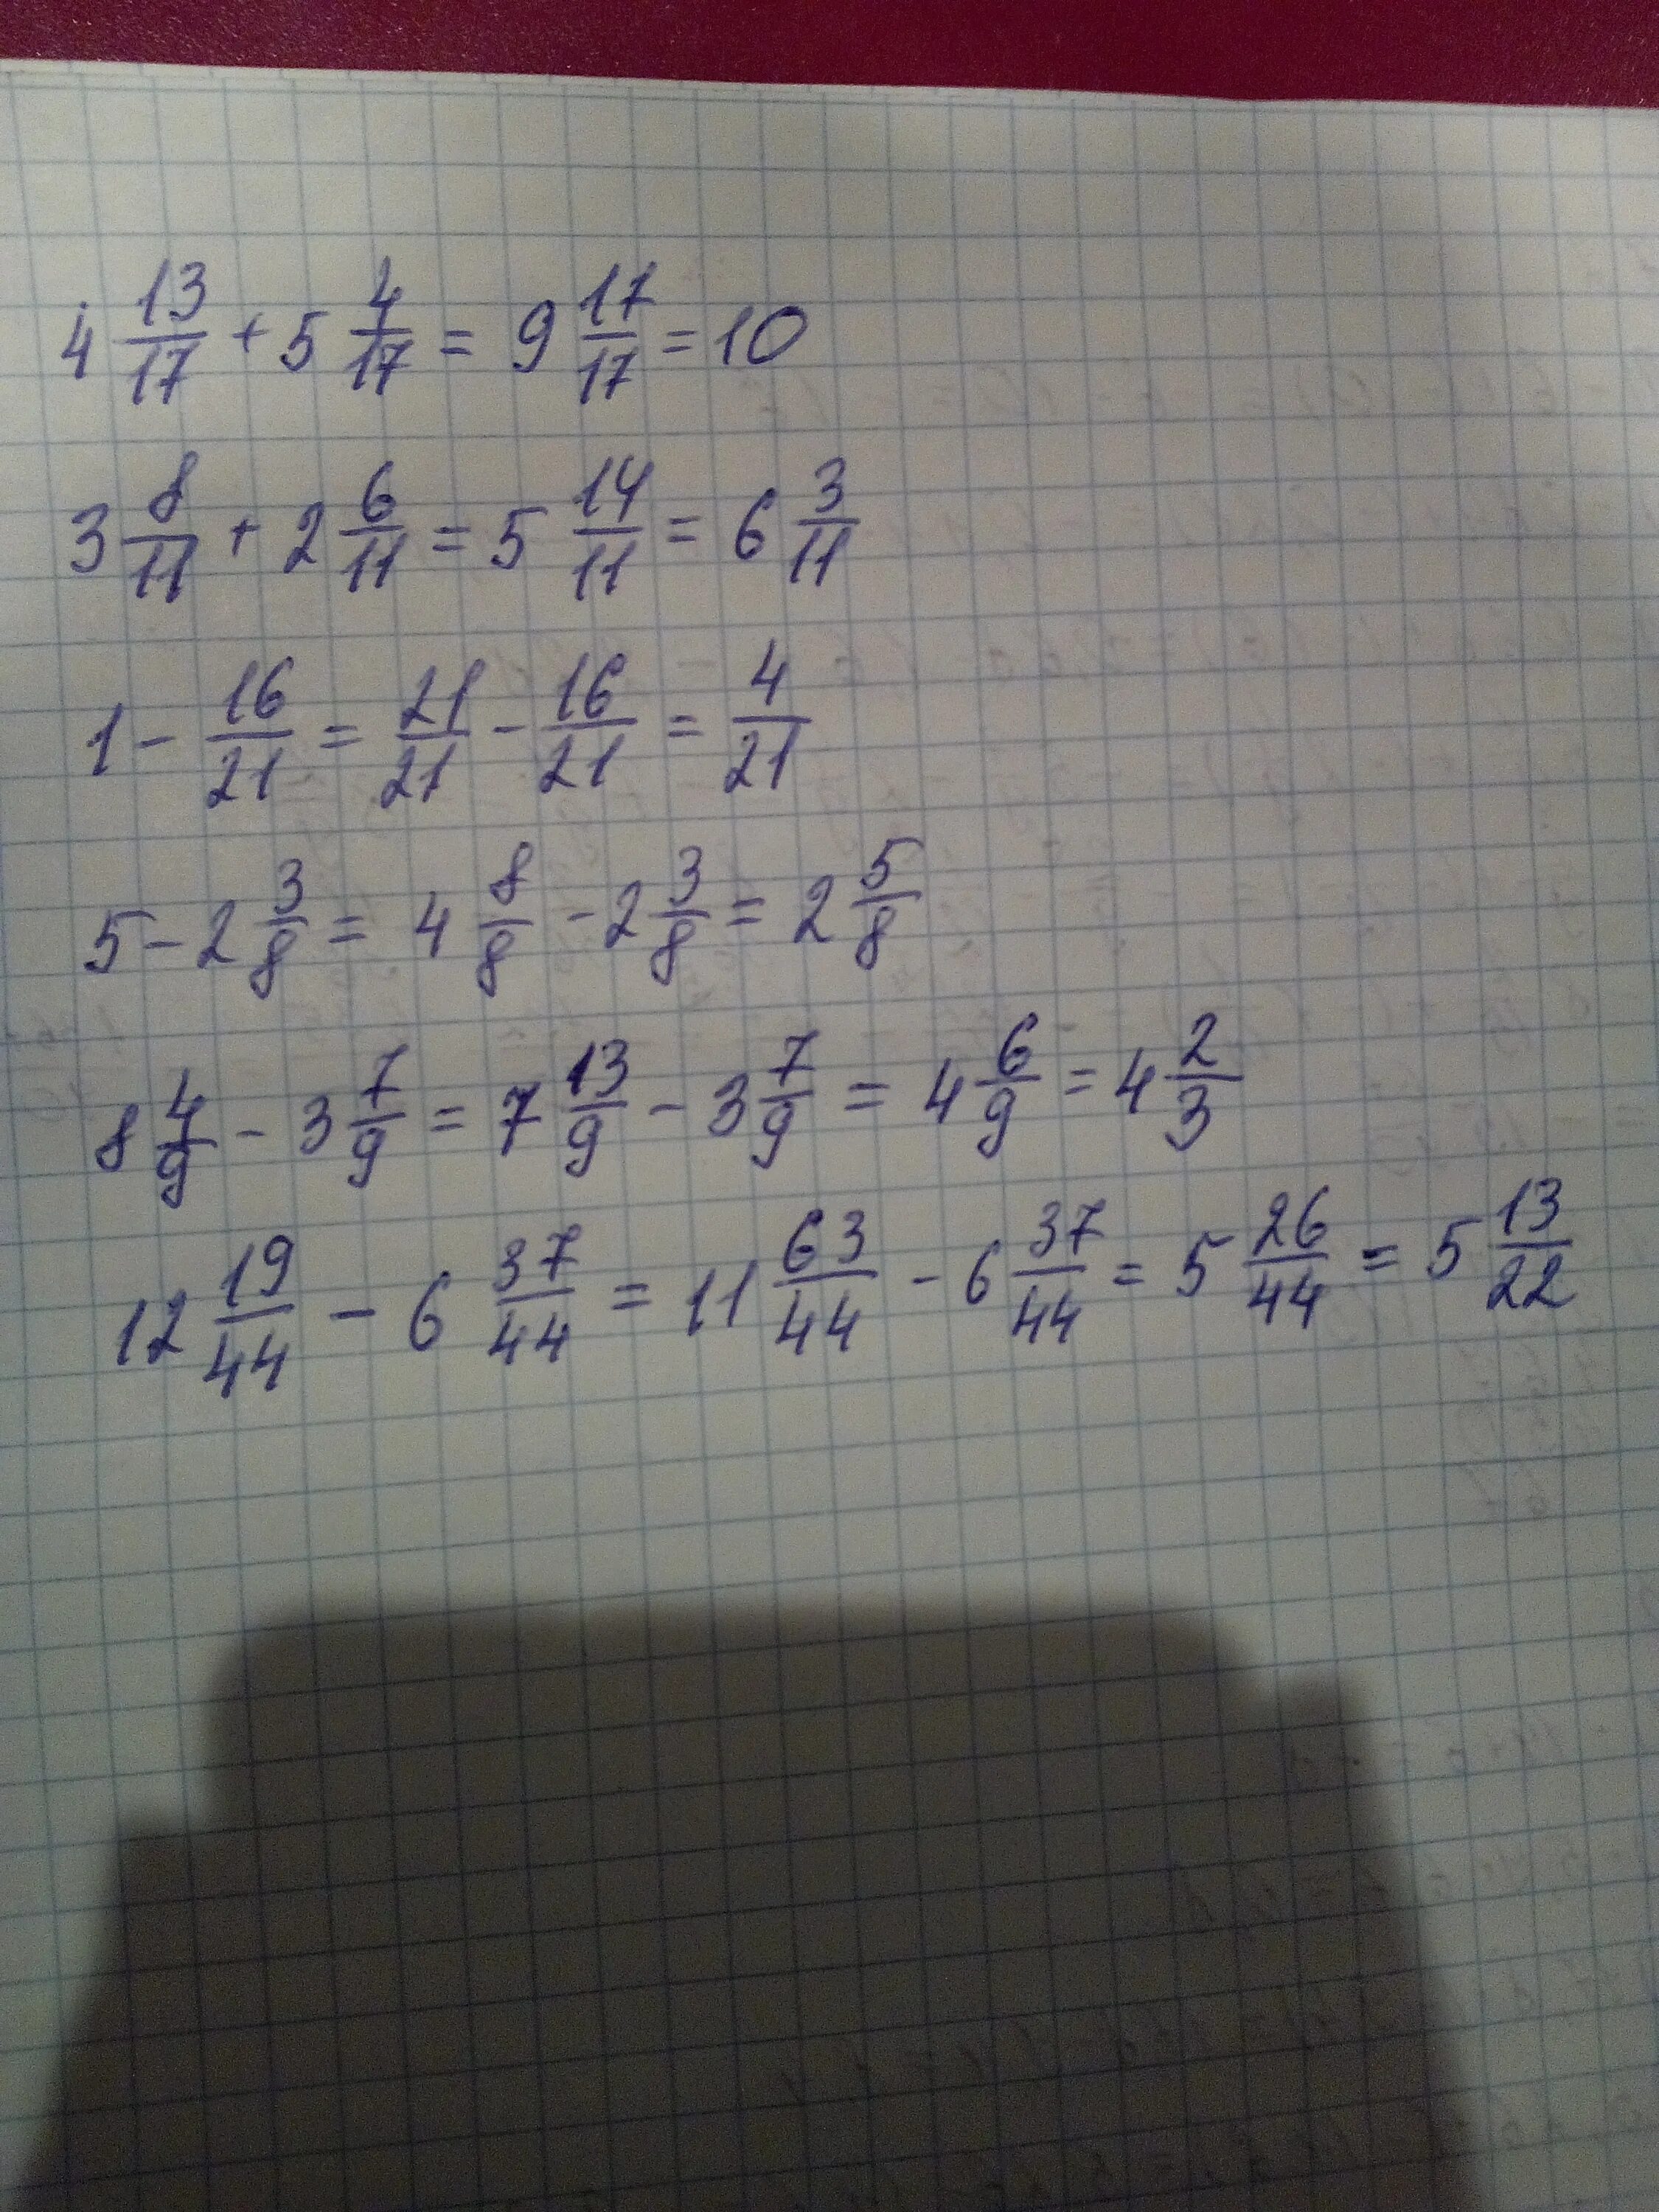 7 9 1 2 8 5. (5 1/16-1 1/8)×(5/6+3/15). (2/5-6,6) :(1 1/4- 11/3) Решение. (6 3/4-5 2/5) +(3 4/5+2 1/5) Решение. (9-2 3/11)+(2+1 9/11) Решение.